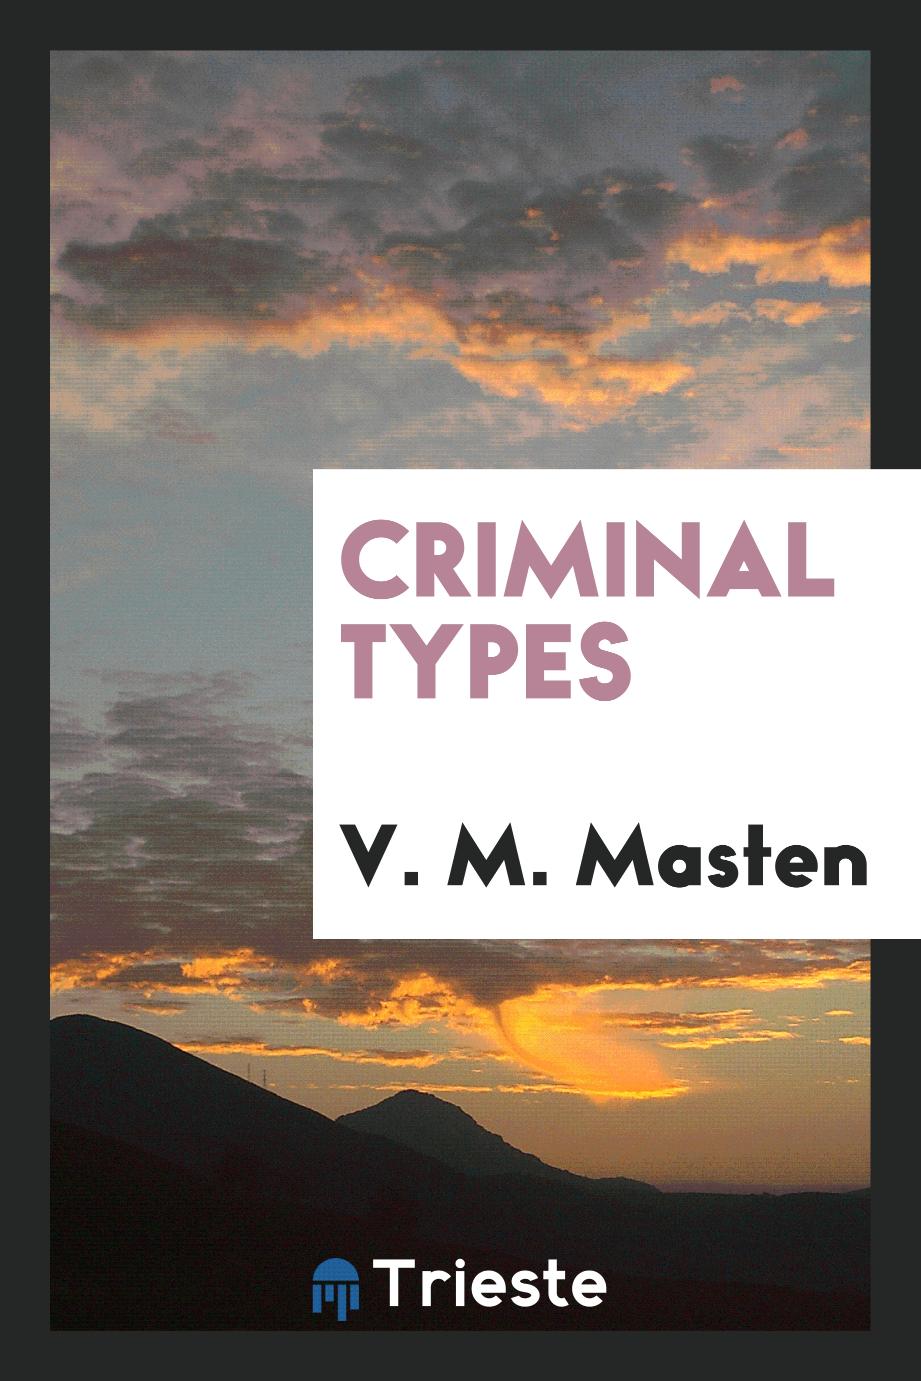 Criminal types